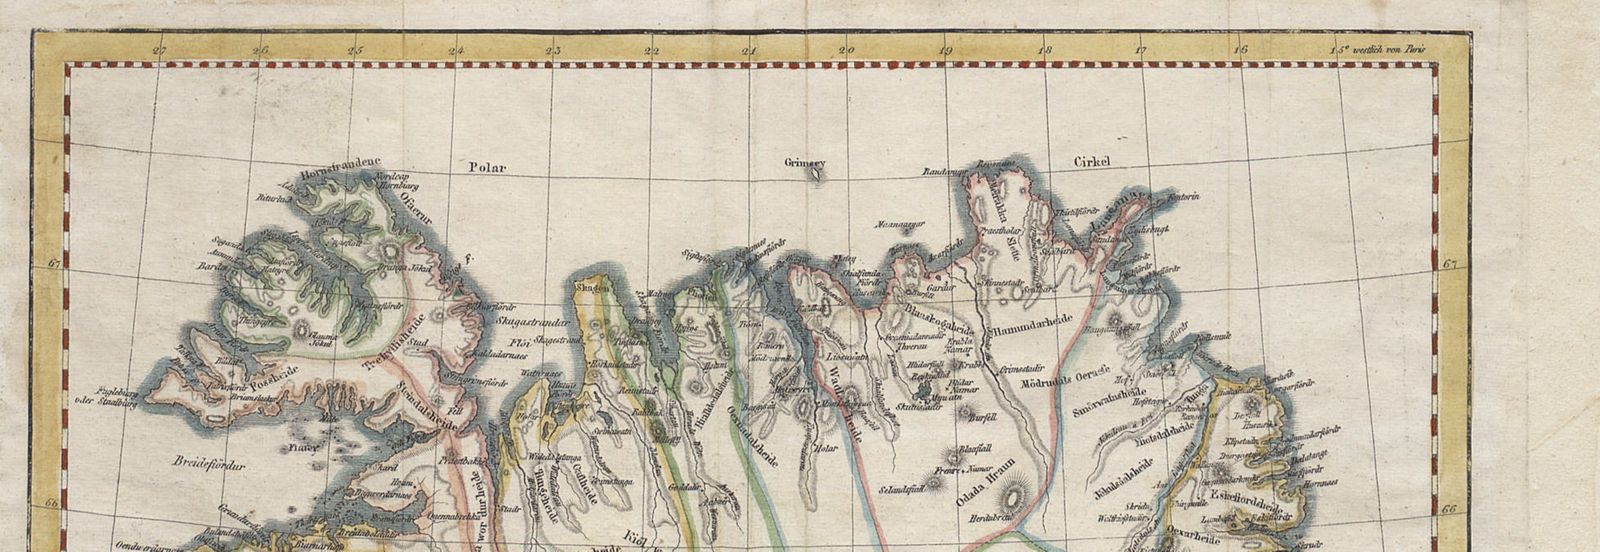 Maps of Iceland based on the coastal charts